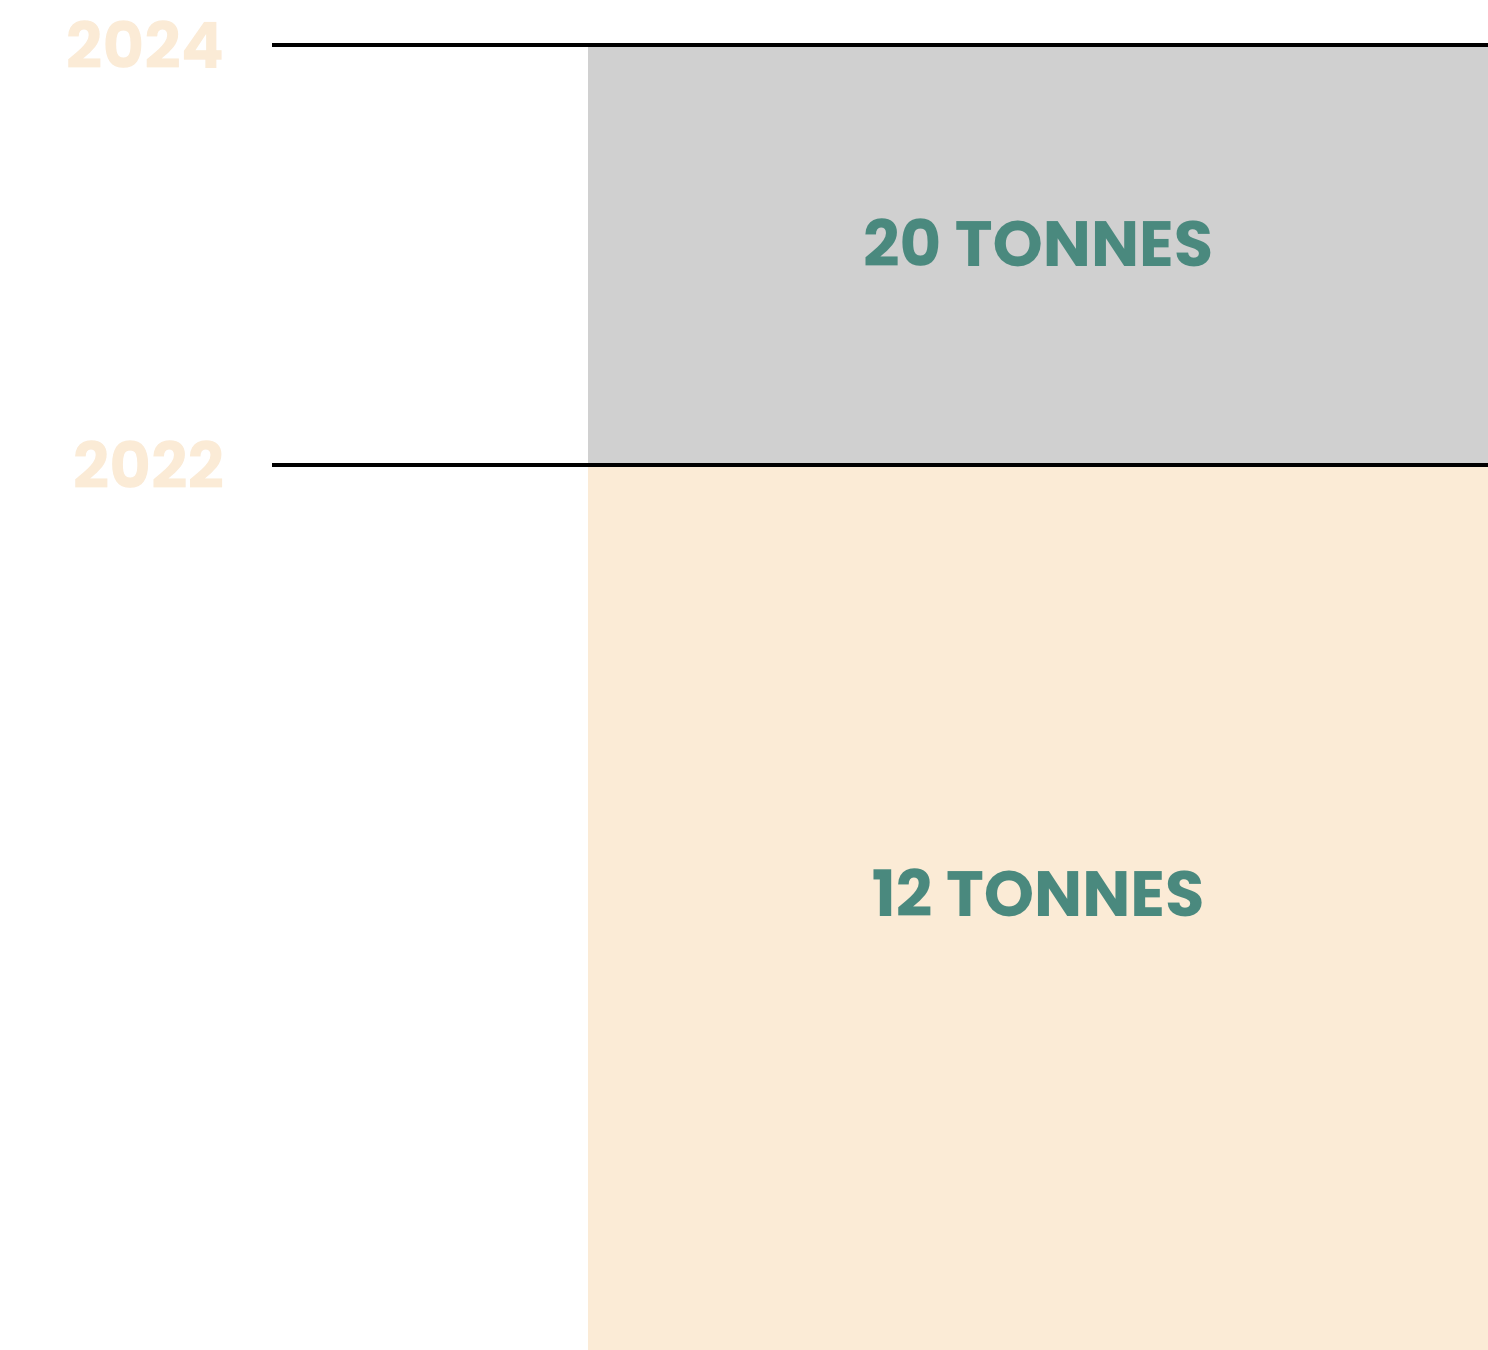 2022 12 tonnes - 2024 20 tonnes